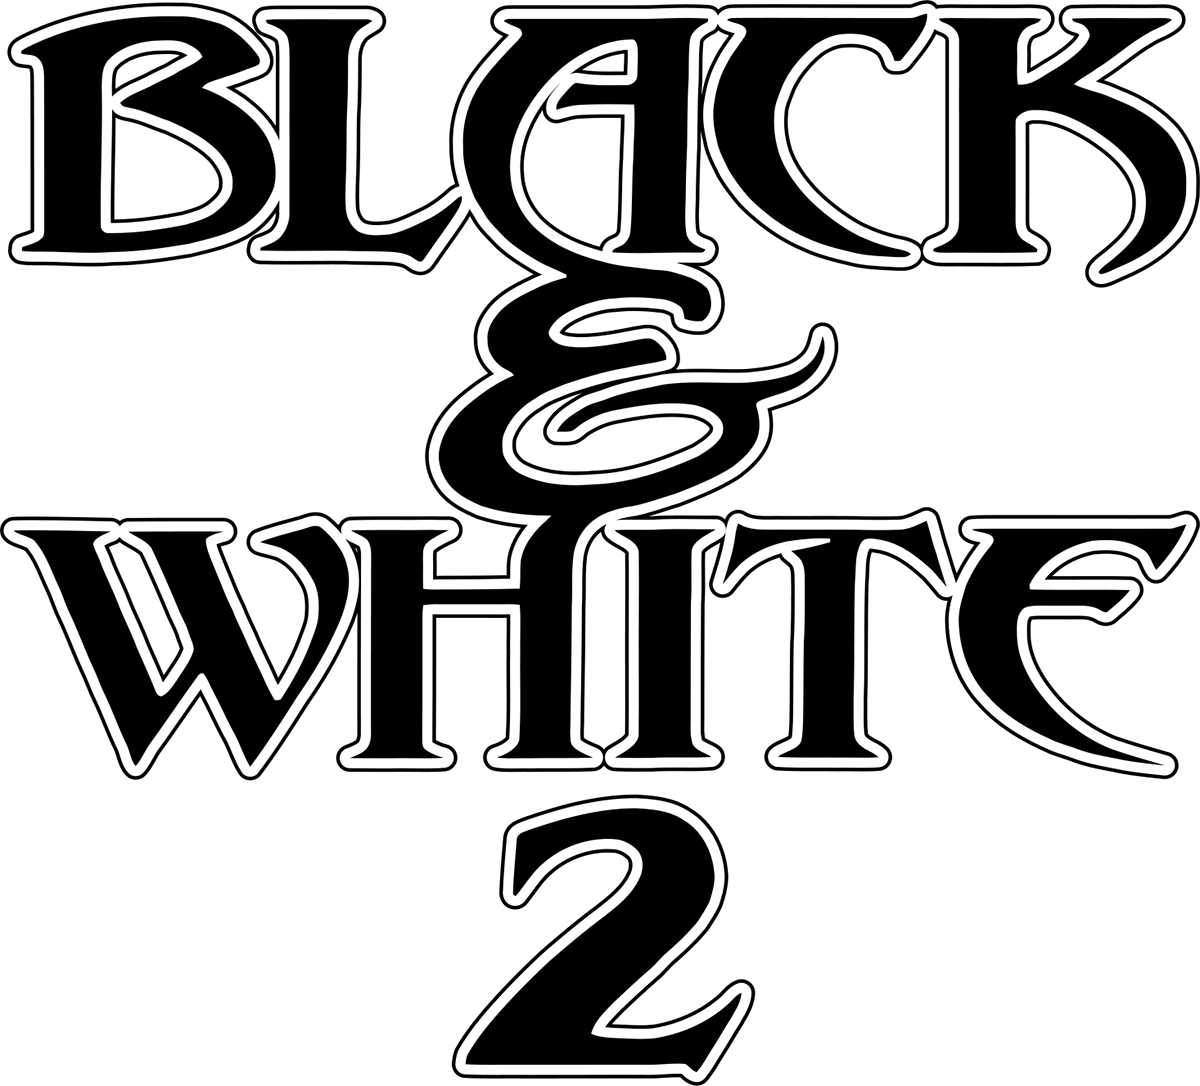 Black & White 2 Images - LaunchBox Games Database